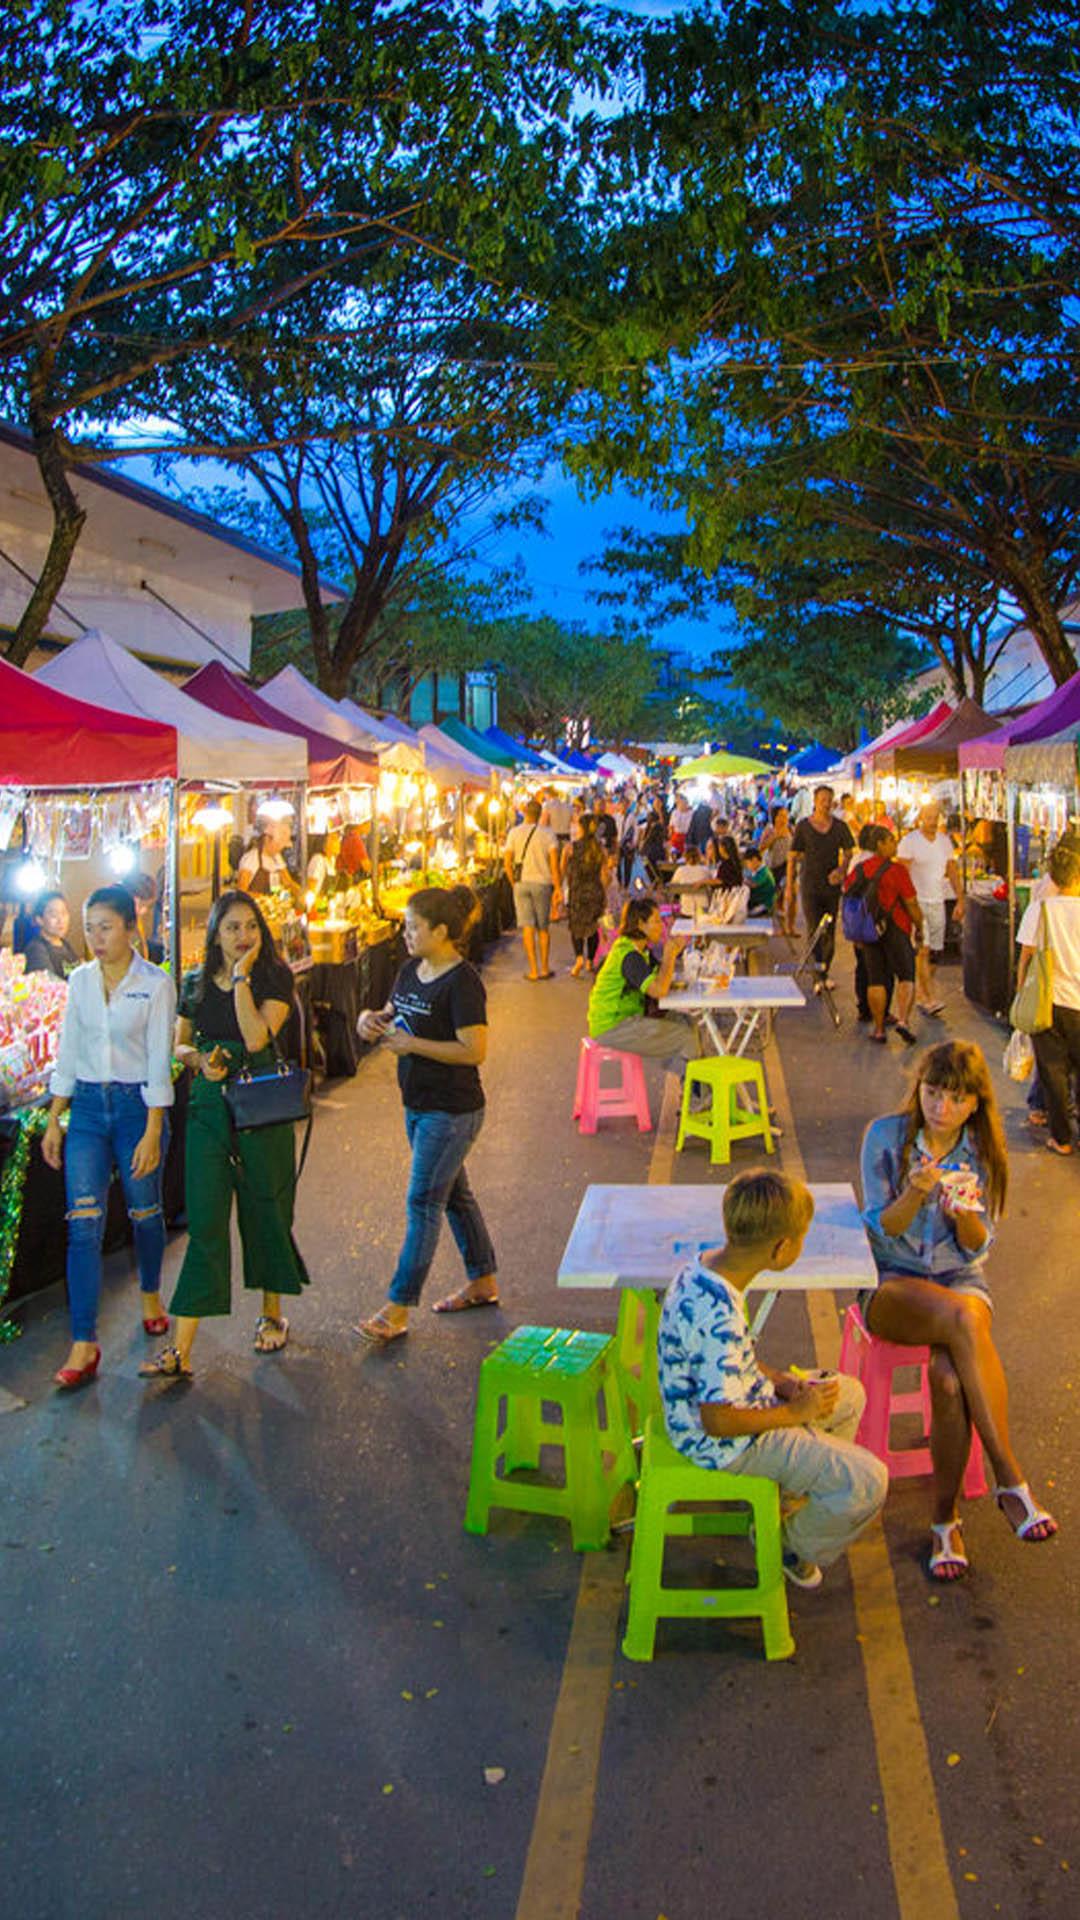 6. Experience Friday Night Market at Boat Avenue